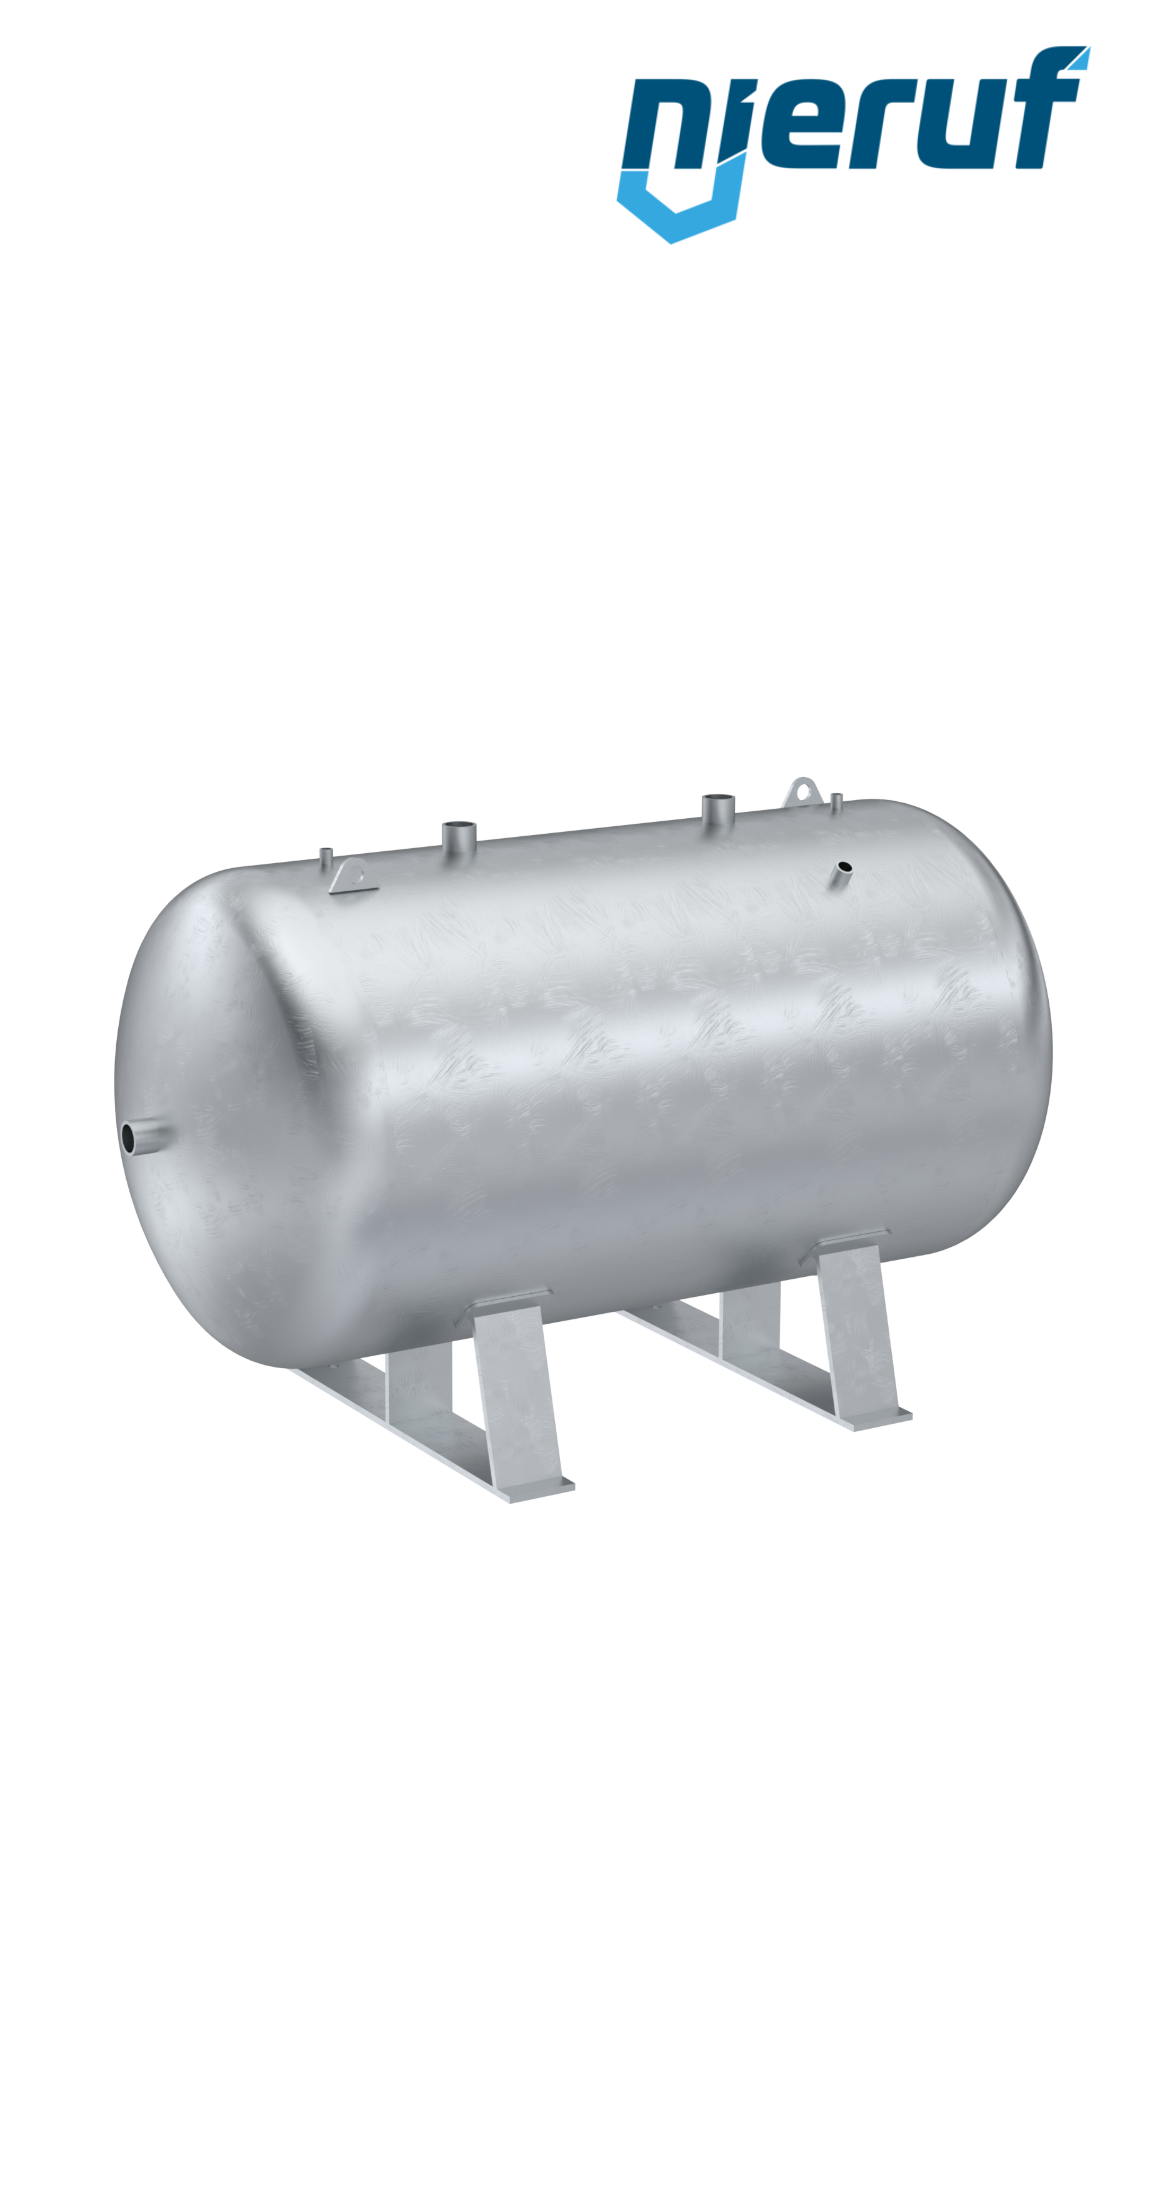 Serbatoio a pressione orizzontale BE01 2000 litri, 0-11 bar, acciaio primerizzato